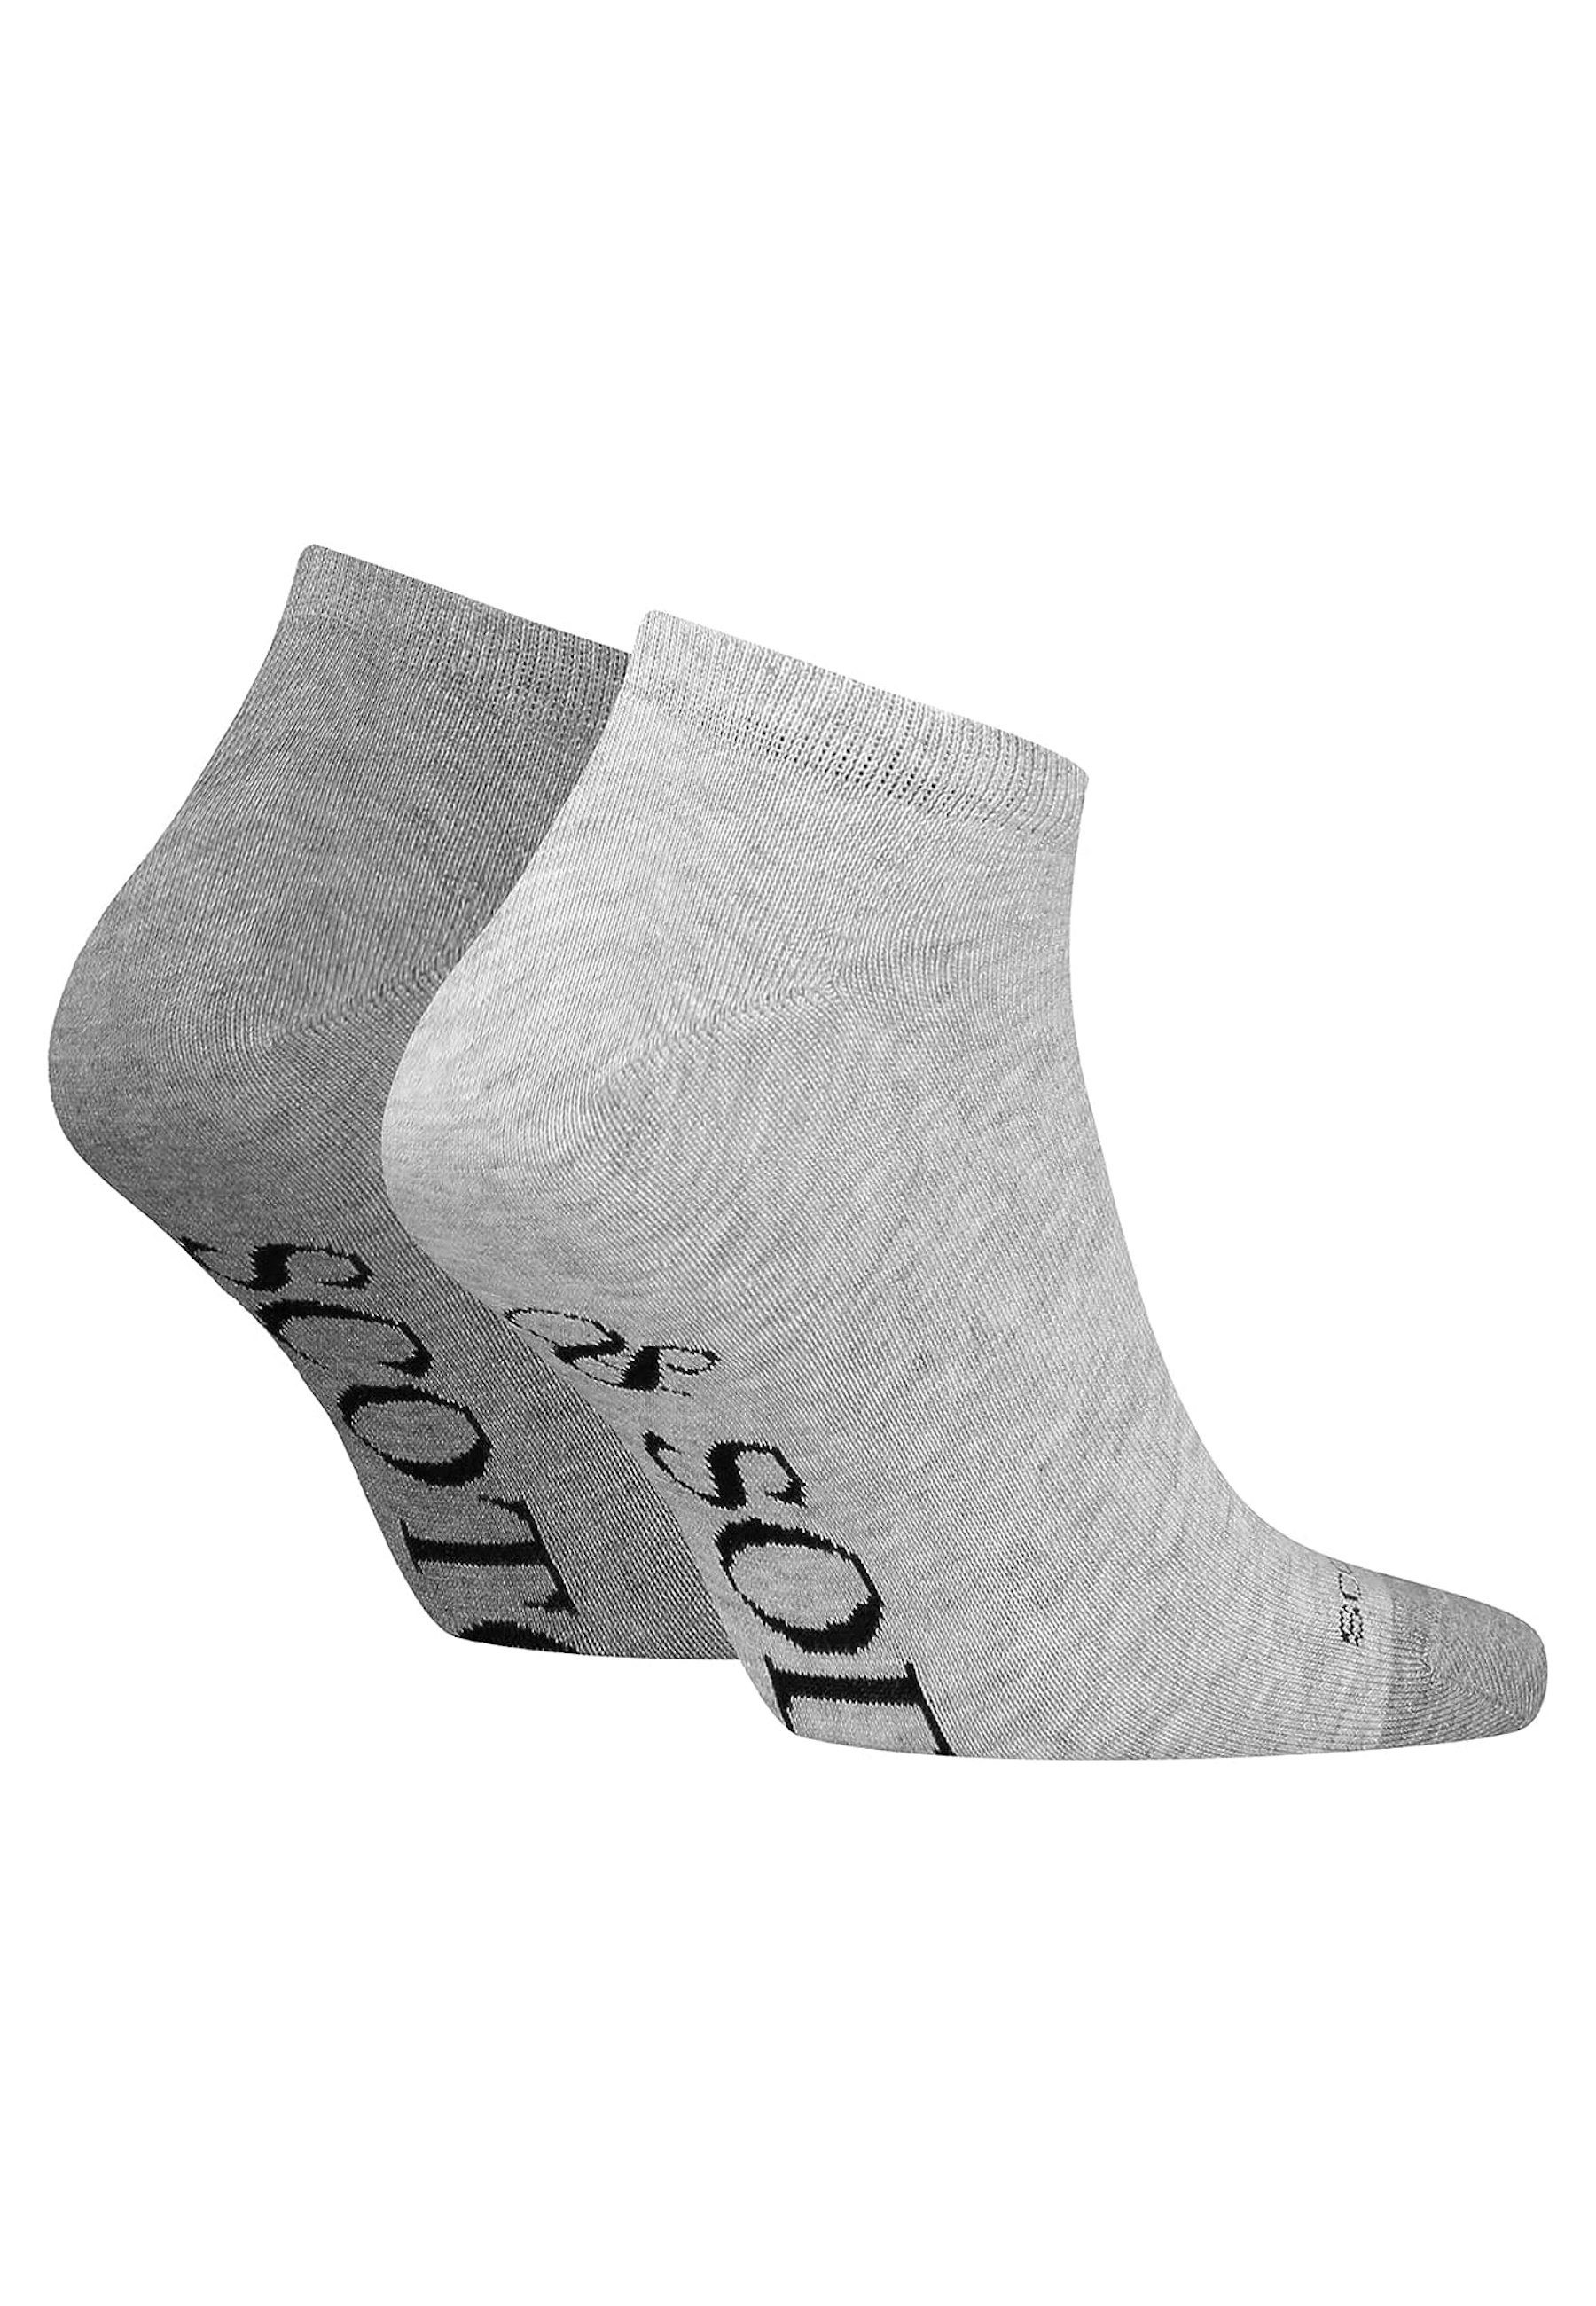 Dip Toe grau (2-Paar) Sneaker Socken Scotch Socks & Soda Socken Doppelpack